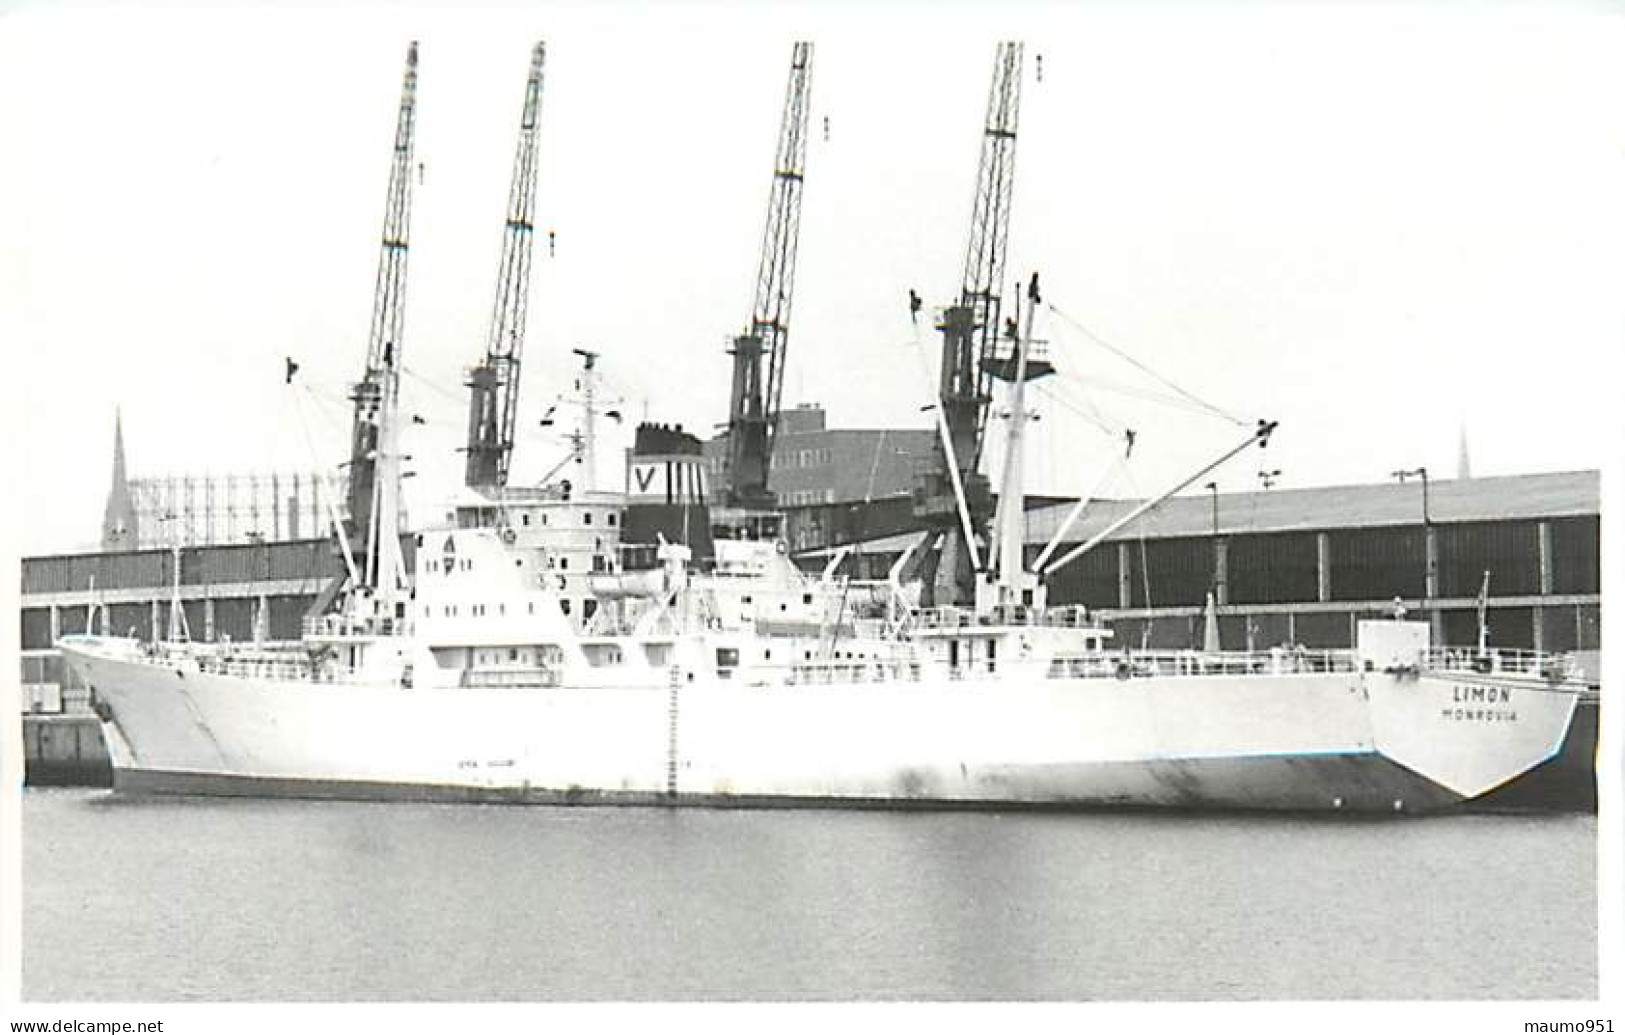 154 CLICHE BATEAU COMMERCE - LE LIMON DE 1968 - CATEGORIE 6709 TONNES - FORMAT CPA N° B 0154 - Schiffe